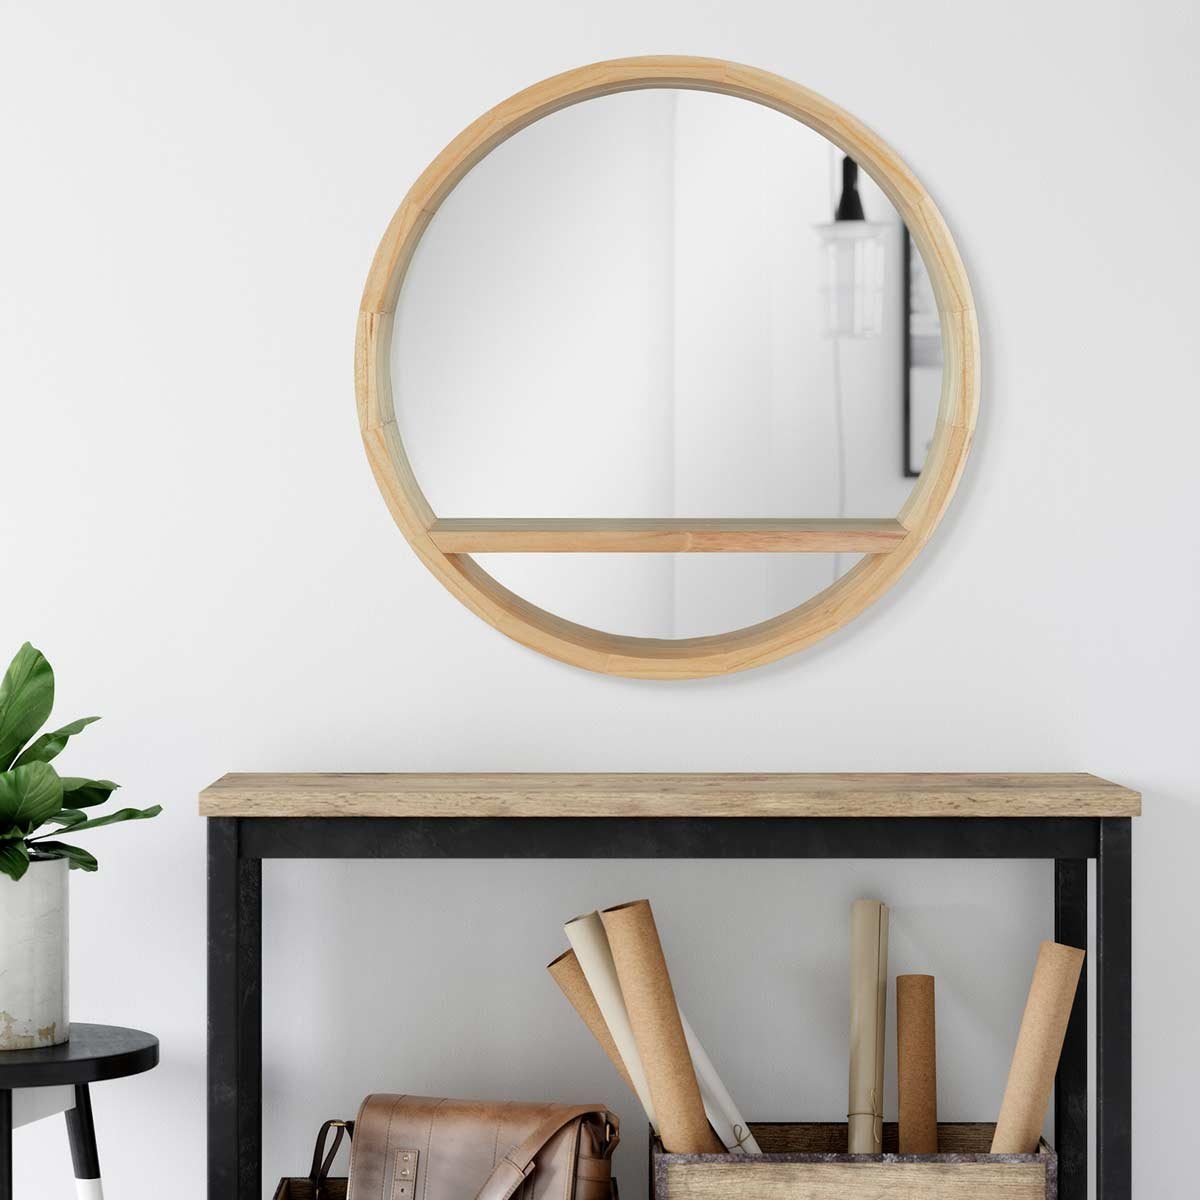 PHOTOLINI Spiegel mit Holzrahmen und praktischer Ablagefläche, Wandspiegel Naturholz | Spiegel